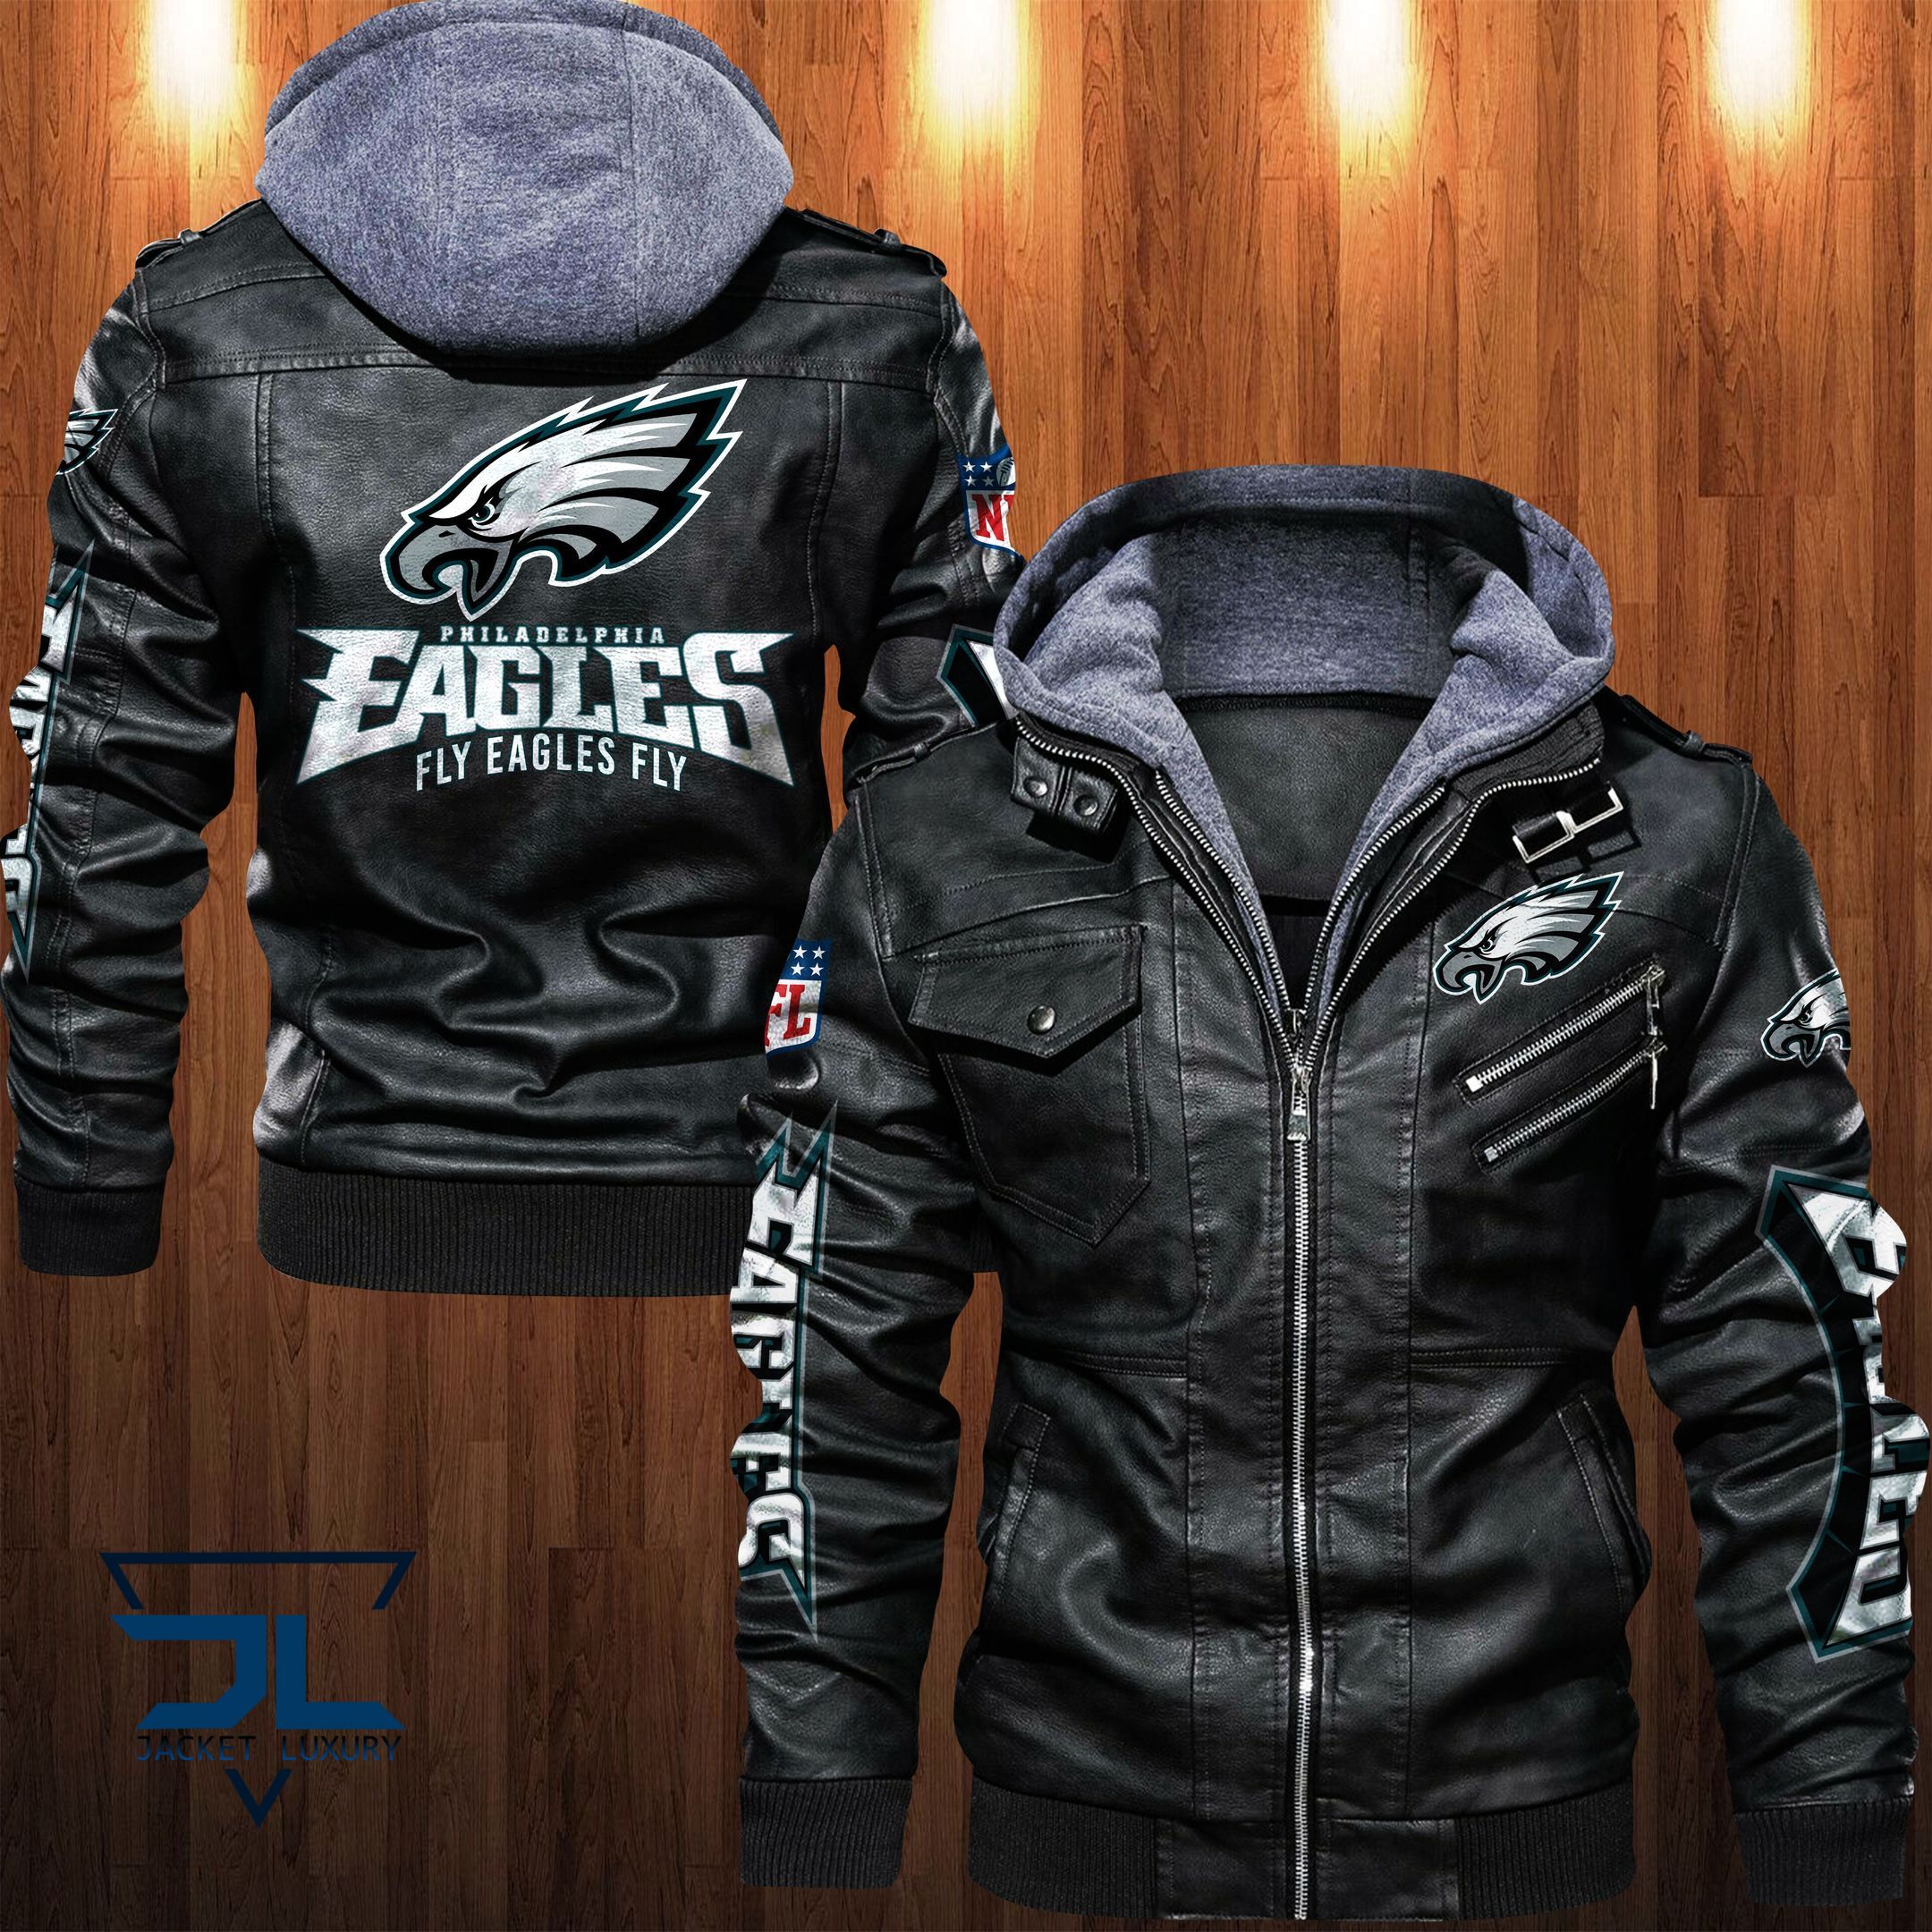 Get the best jackets under $100! 245